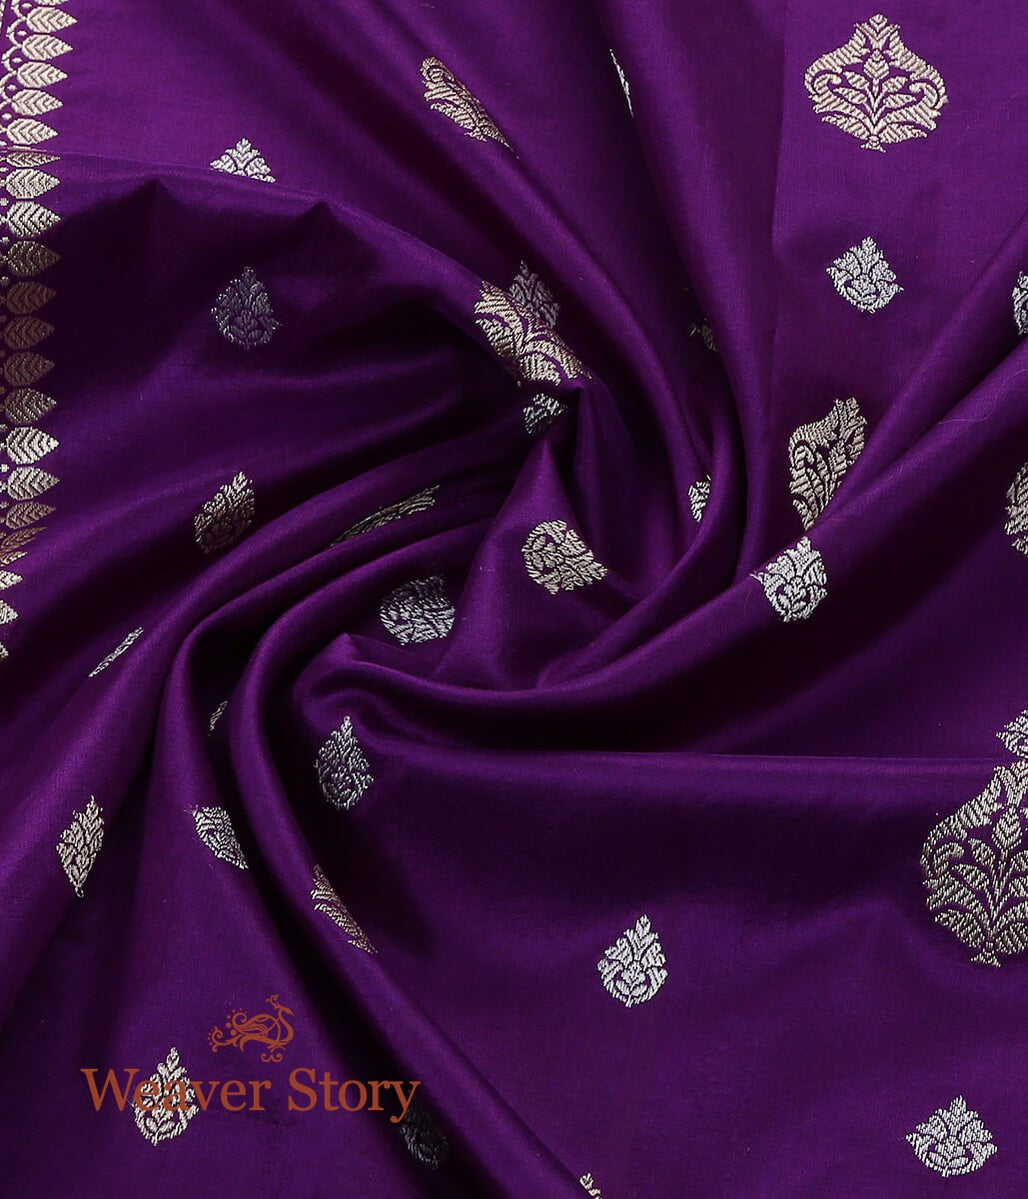 Handloom_Purple_Banarasi_Silk_Dupatta_with_Kadhwa_Booti_and_Meenakari_WeaverStory_05